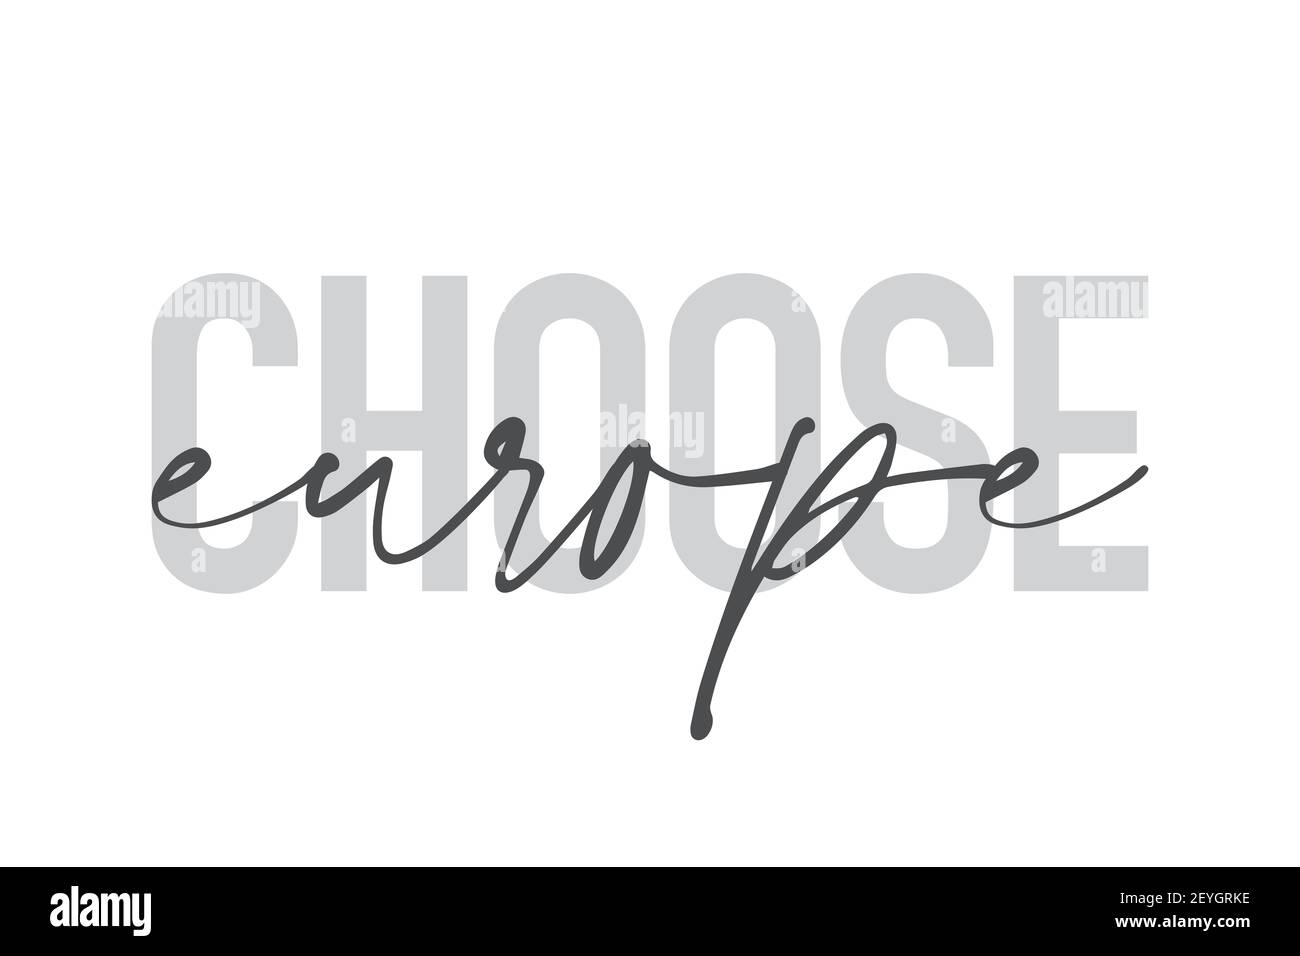 Modernes, urbanes, schlichtes Grafikdesign eines Sprichwort "Choose Europe" in grauen Farben. Trendige, coole, handgeschriebene Typografie Stockfoto